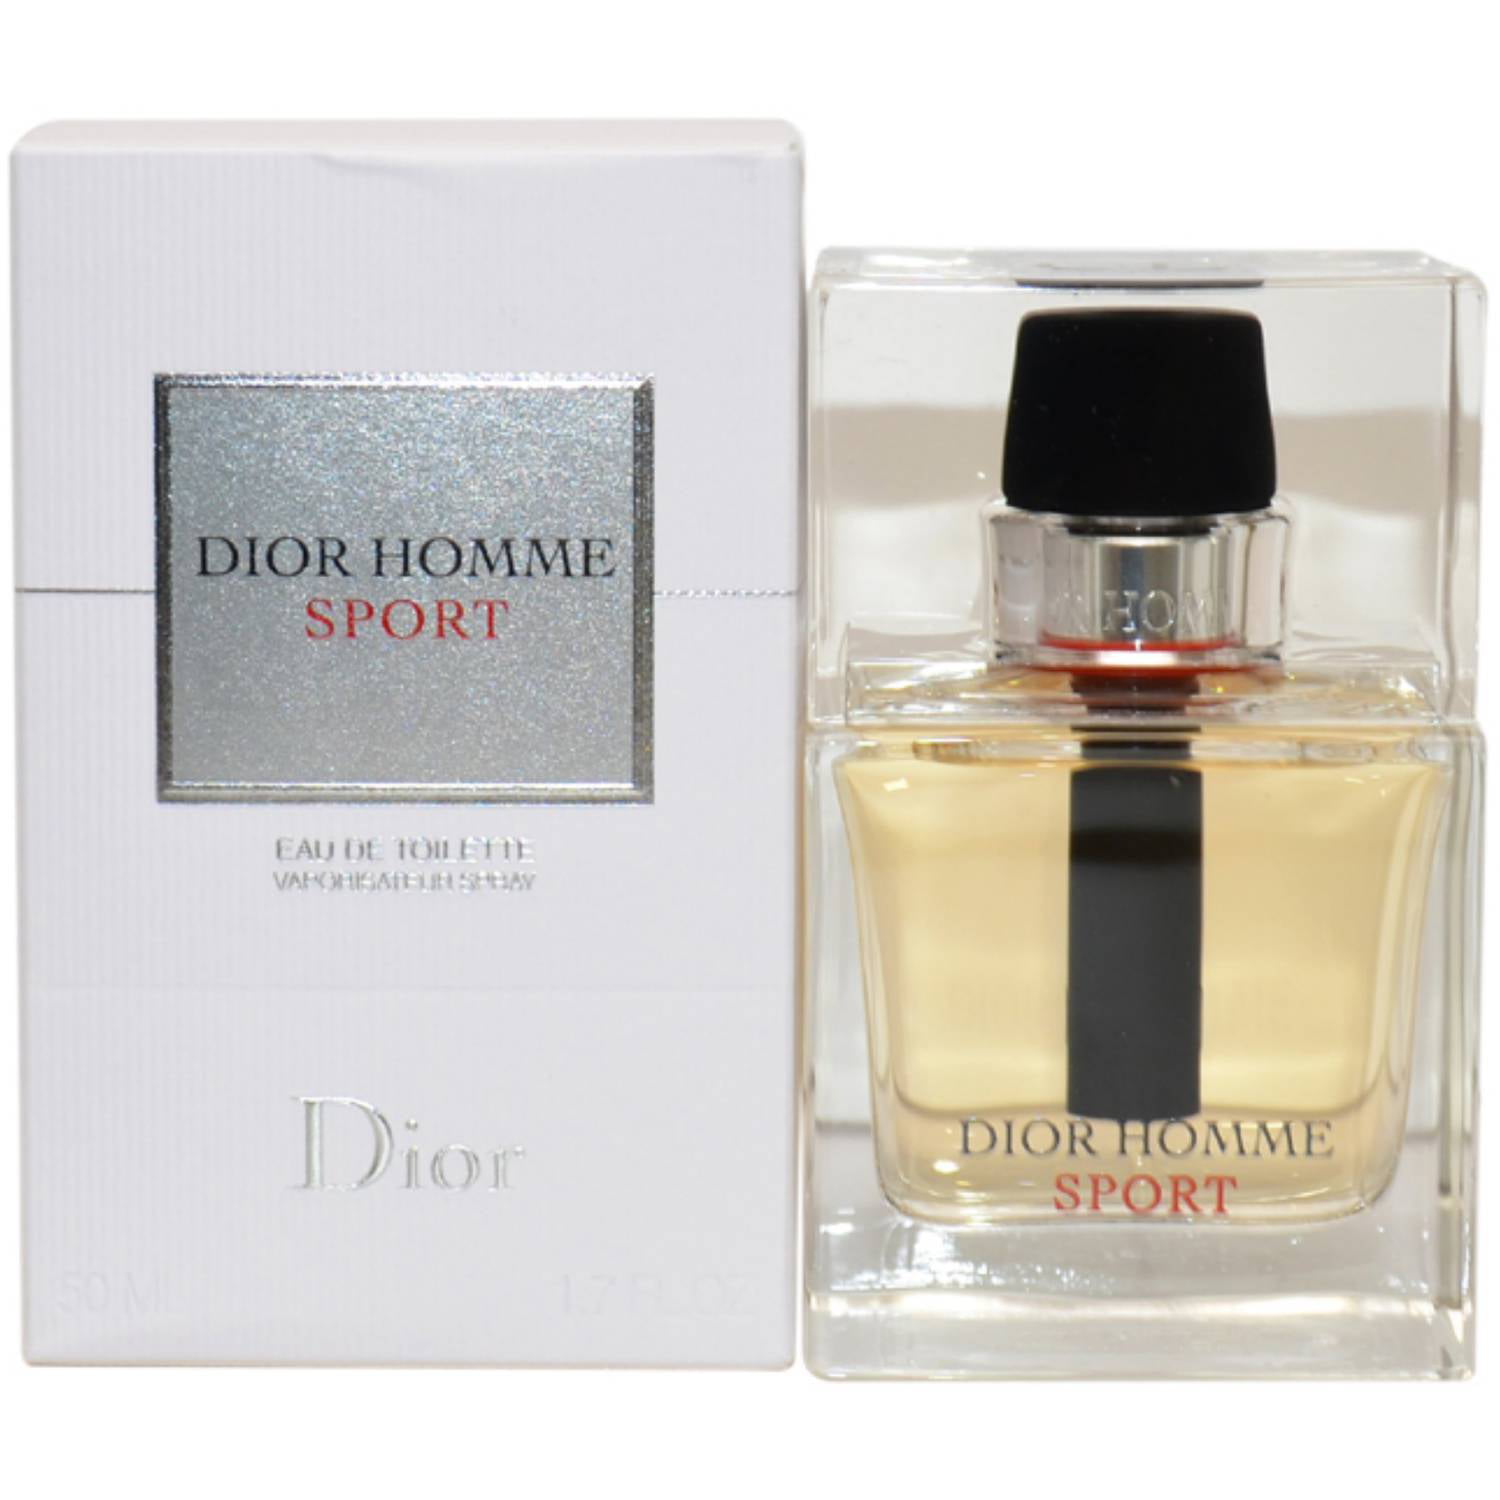 Christian Dior Dior Homme Eau De Cologne Spray 75 ml XXLParfum  Parfum  günstig kaufen